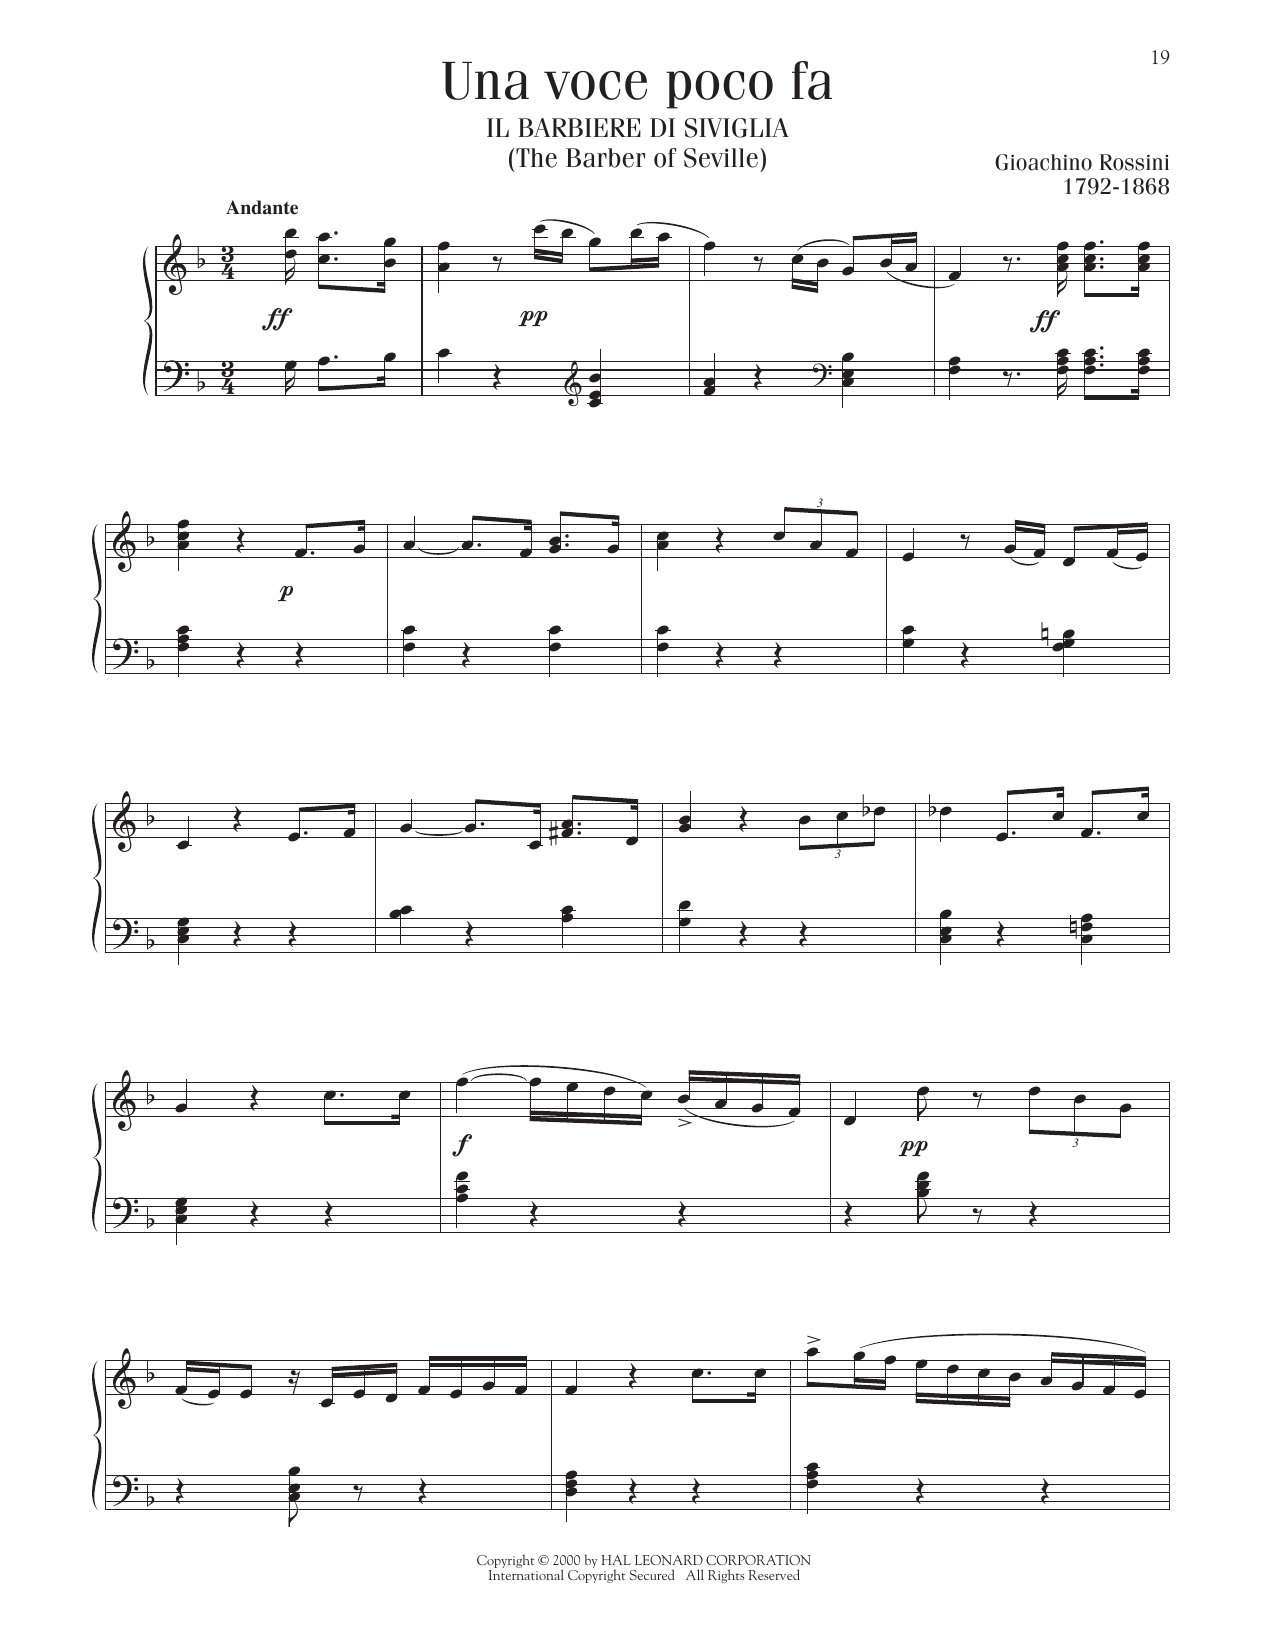 Gioachino Rossini Una Voce Poco Fa Sheet Music Notes & Chords for Piano Solo - Download or Print PDF